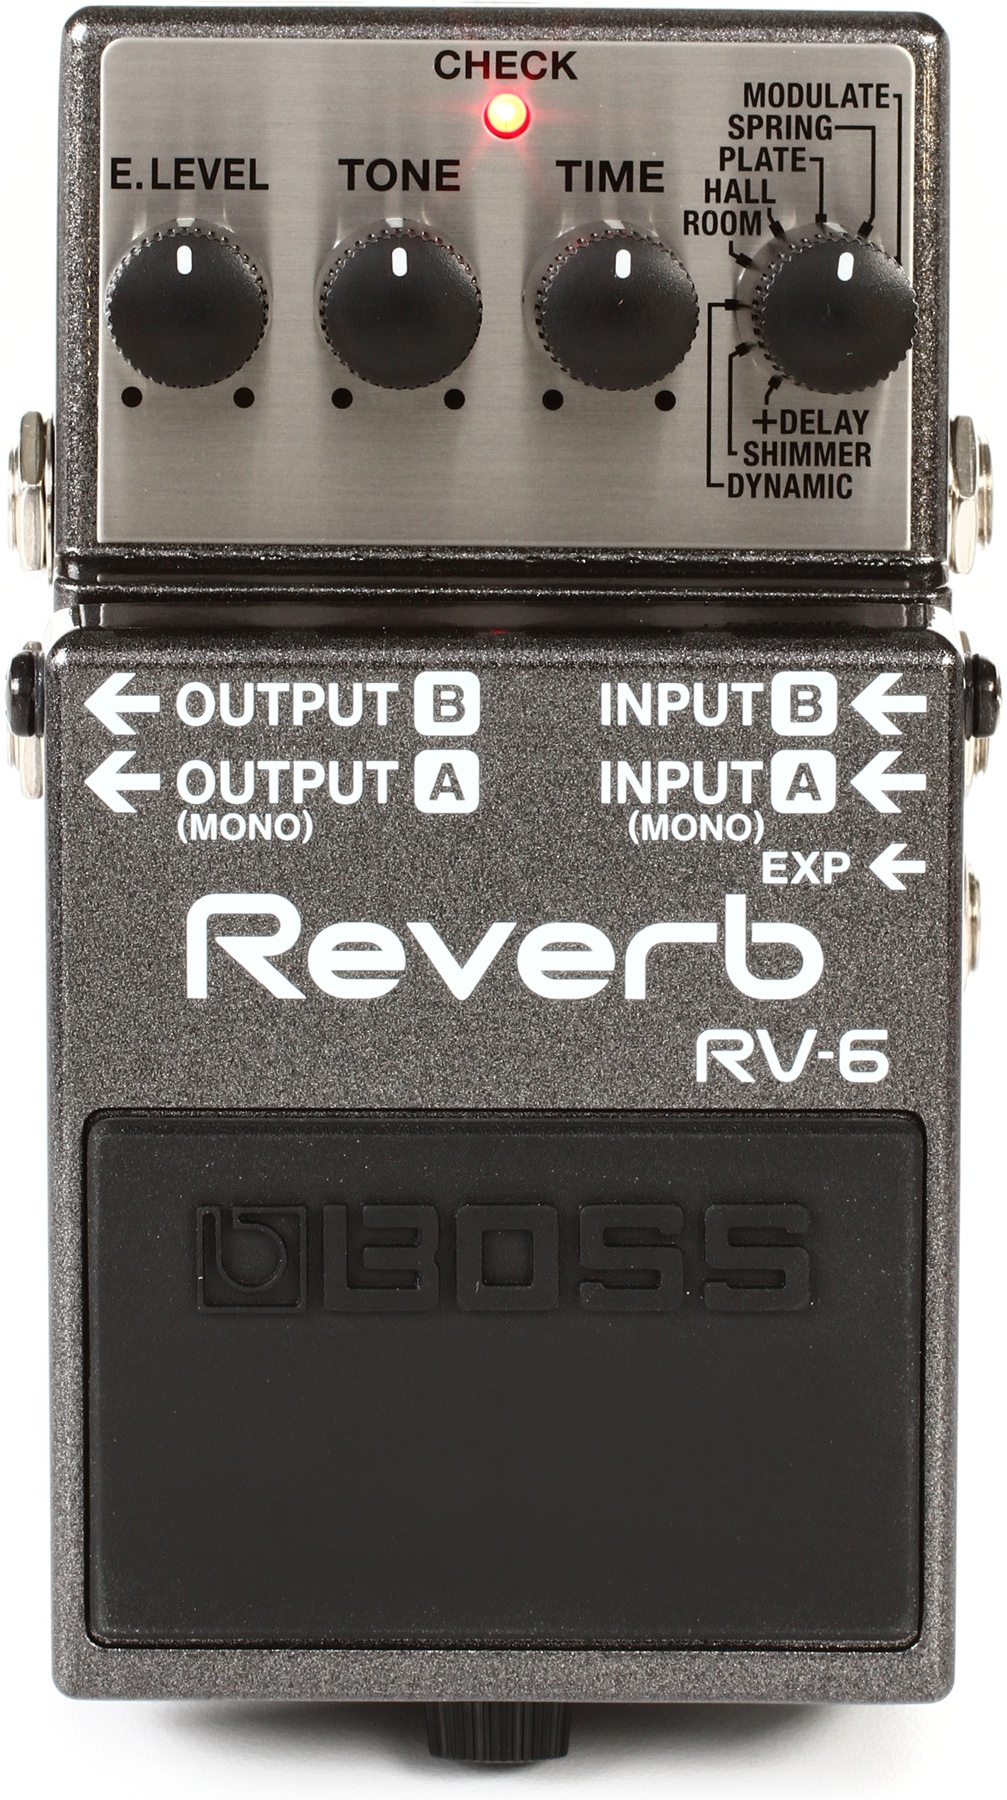 Boss RV6 Digital Reverb Pedal